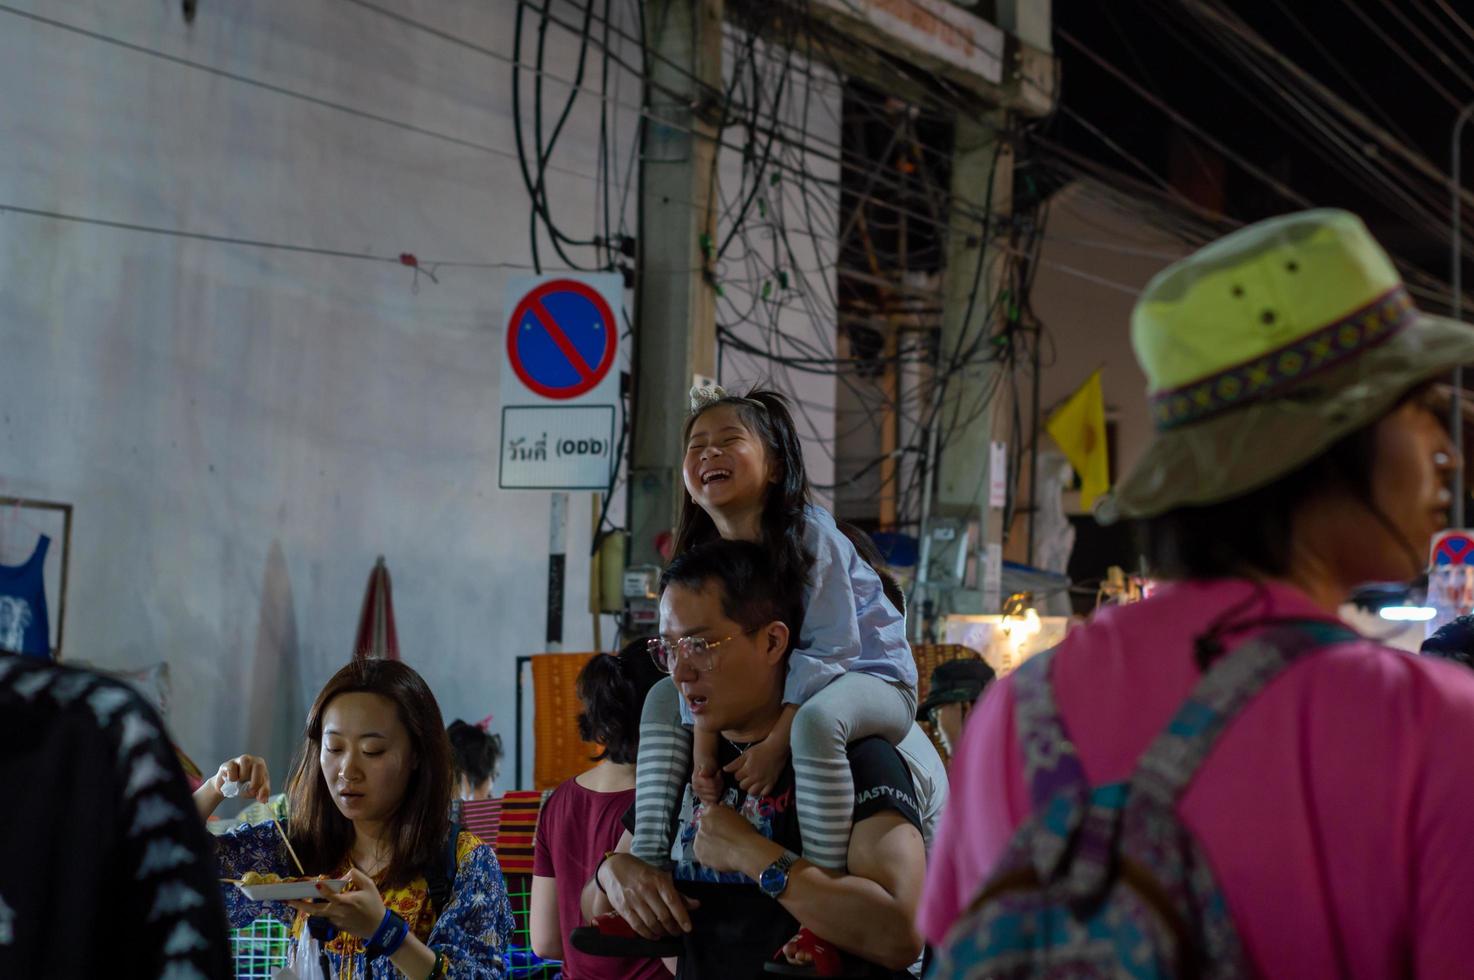 calle peatonal de chiang mai chiang mai tailandia 12 de enero de 2020un mercado de artesanías locales hecho de cerámica de sedametalglasswood o arte y comida turistas tailandeses y extranjeros disfrutan caminando y comprando foto